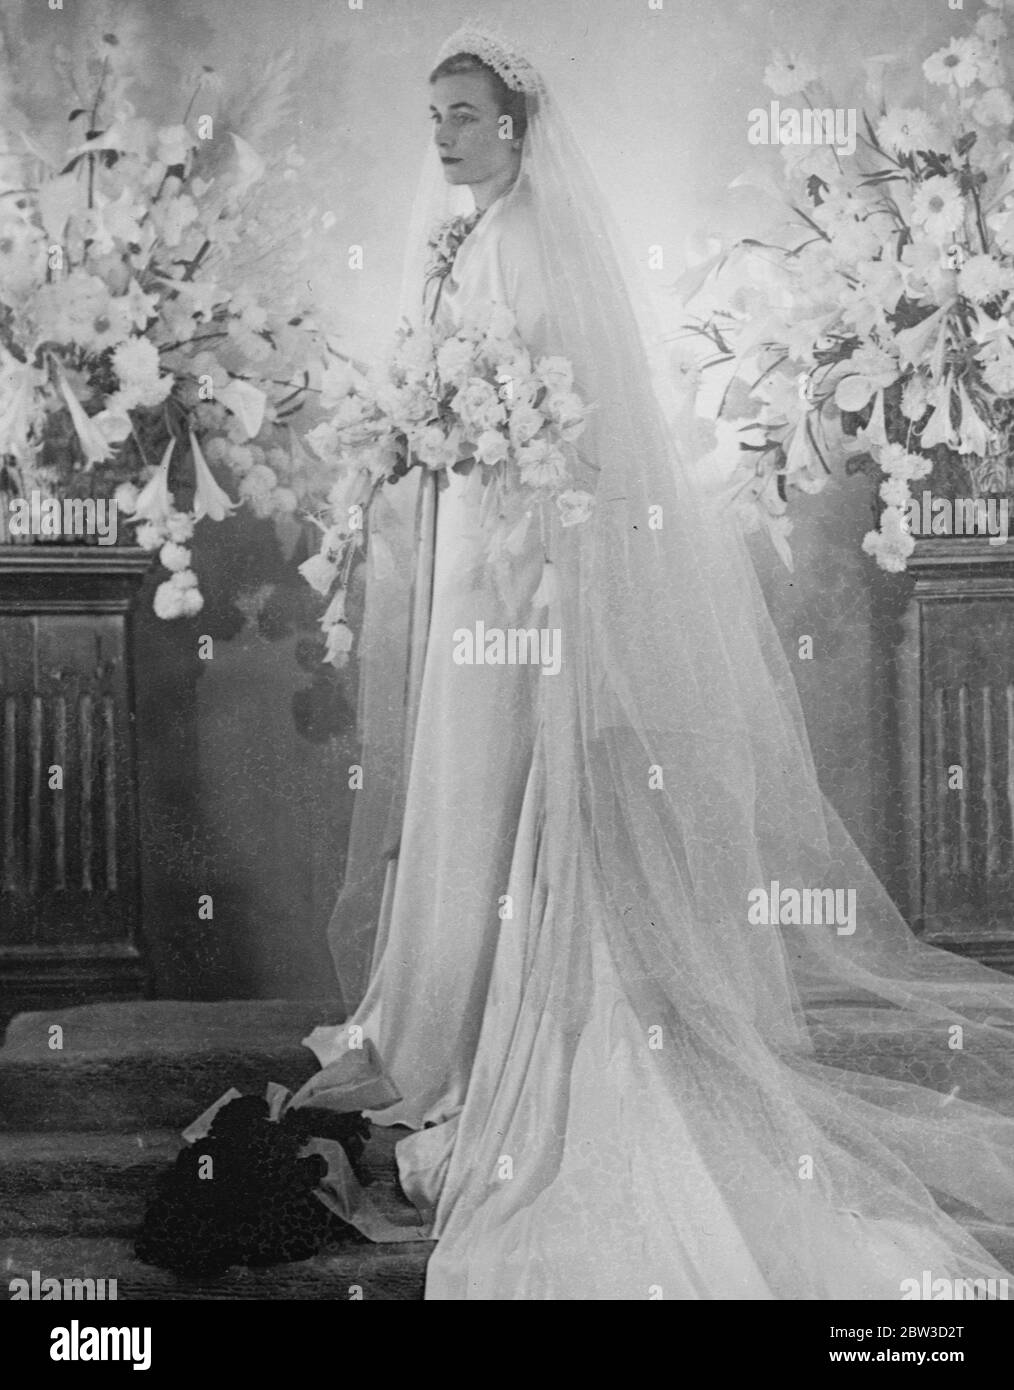 Sposa reale nella sua abito da sposa . Lady Alice Montagu Douglas Scott , figlia del compianto duca di Buccleuch , che oggi si sposerà con il duca di Gloucester nella cappella privata di Buckingham Palace ( mercoledì ) . Foto mostra Lady Alice Montagu nel suo vestito da sposa . 5 novembre 1935 Foto Stock